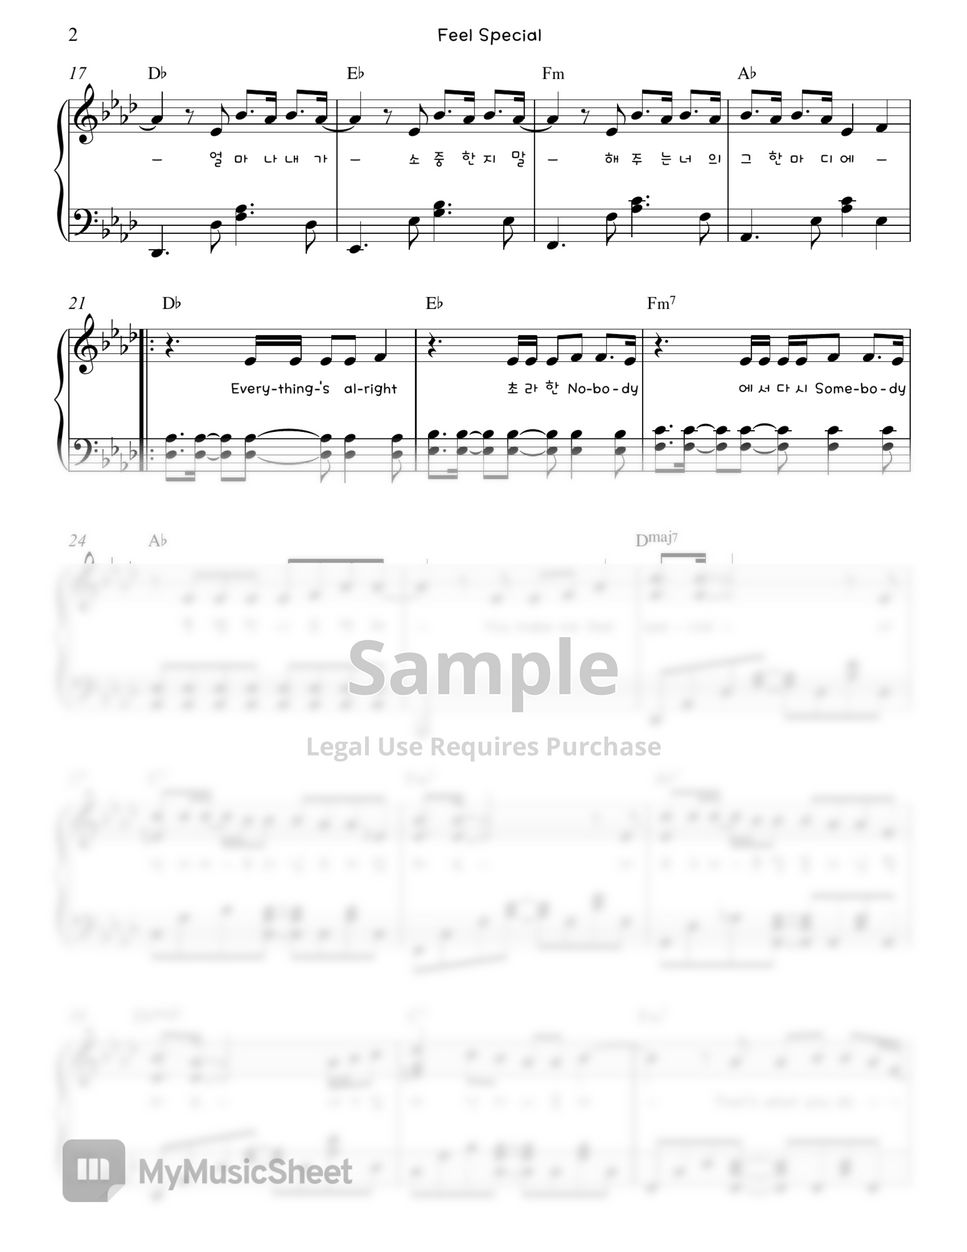 트와이스 (Twice) - Feel Special Piano Sheet by. Gloria L.